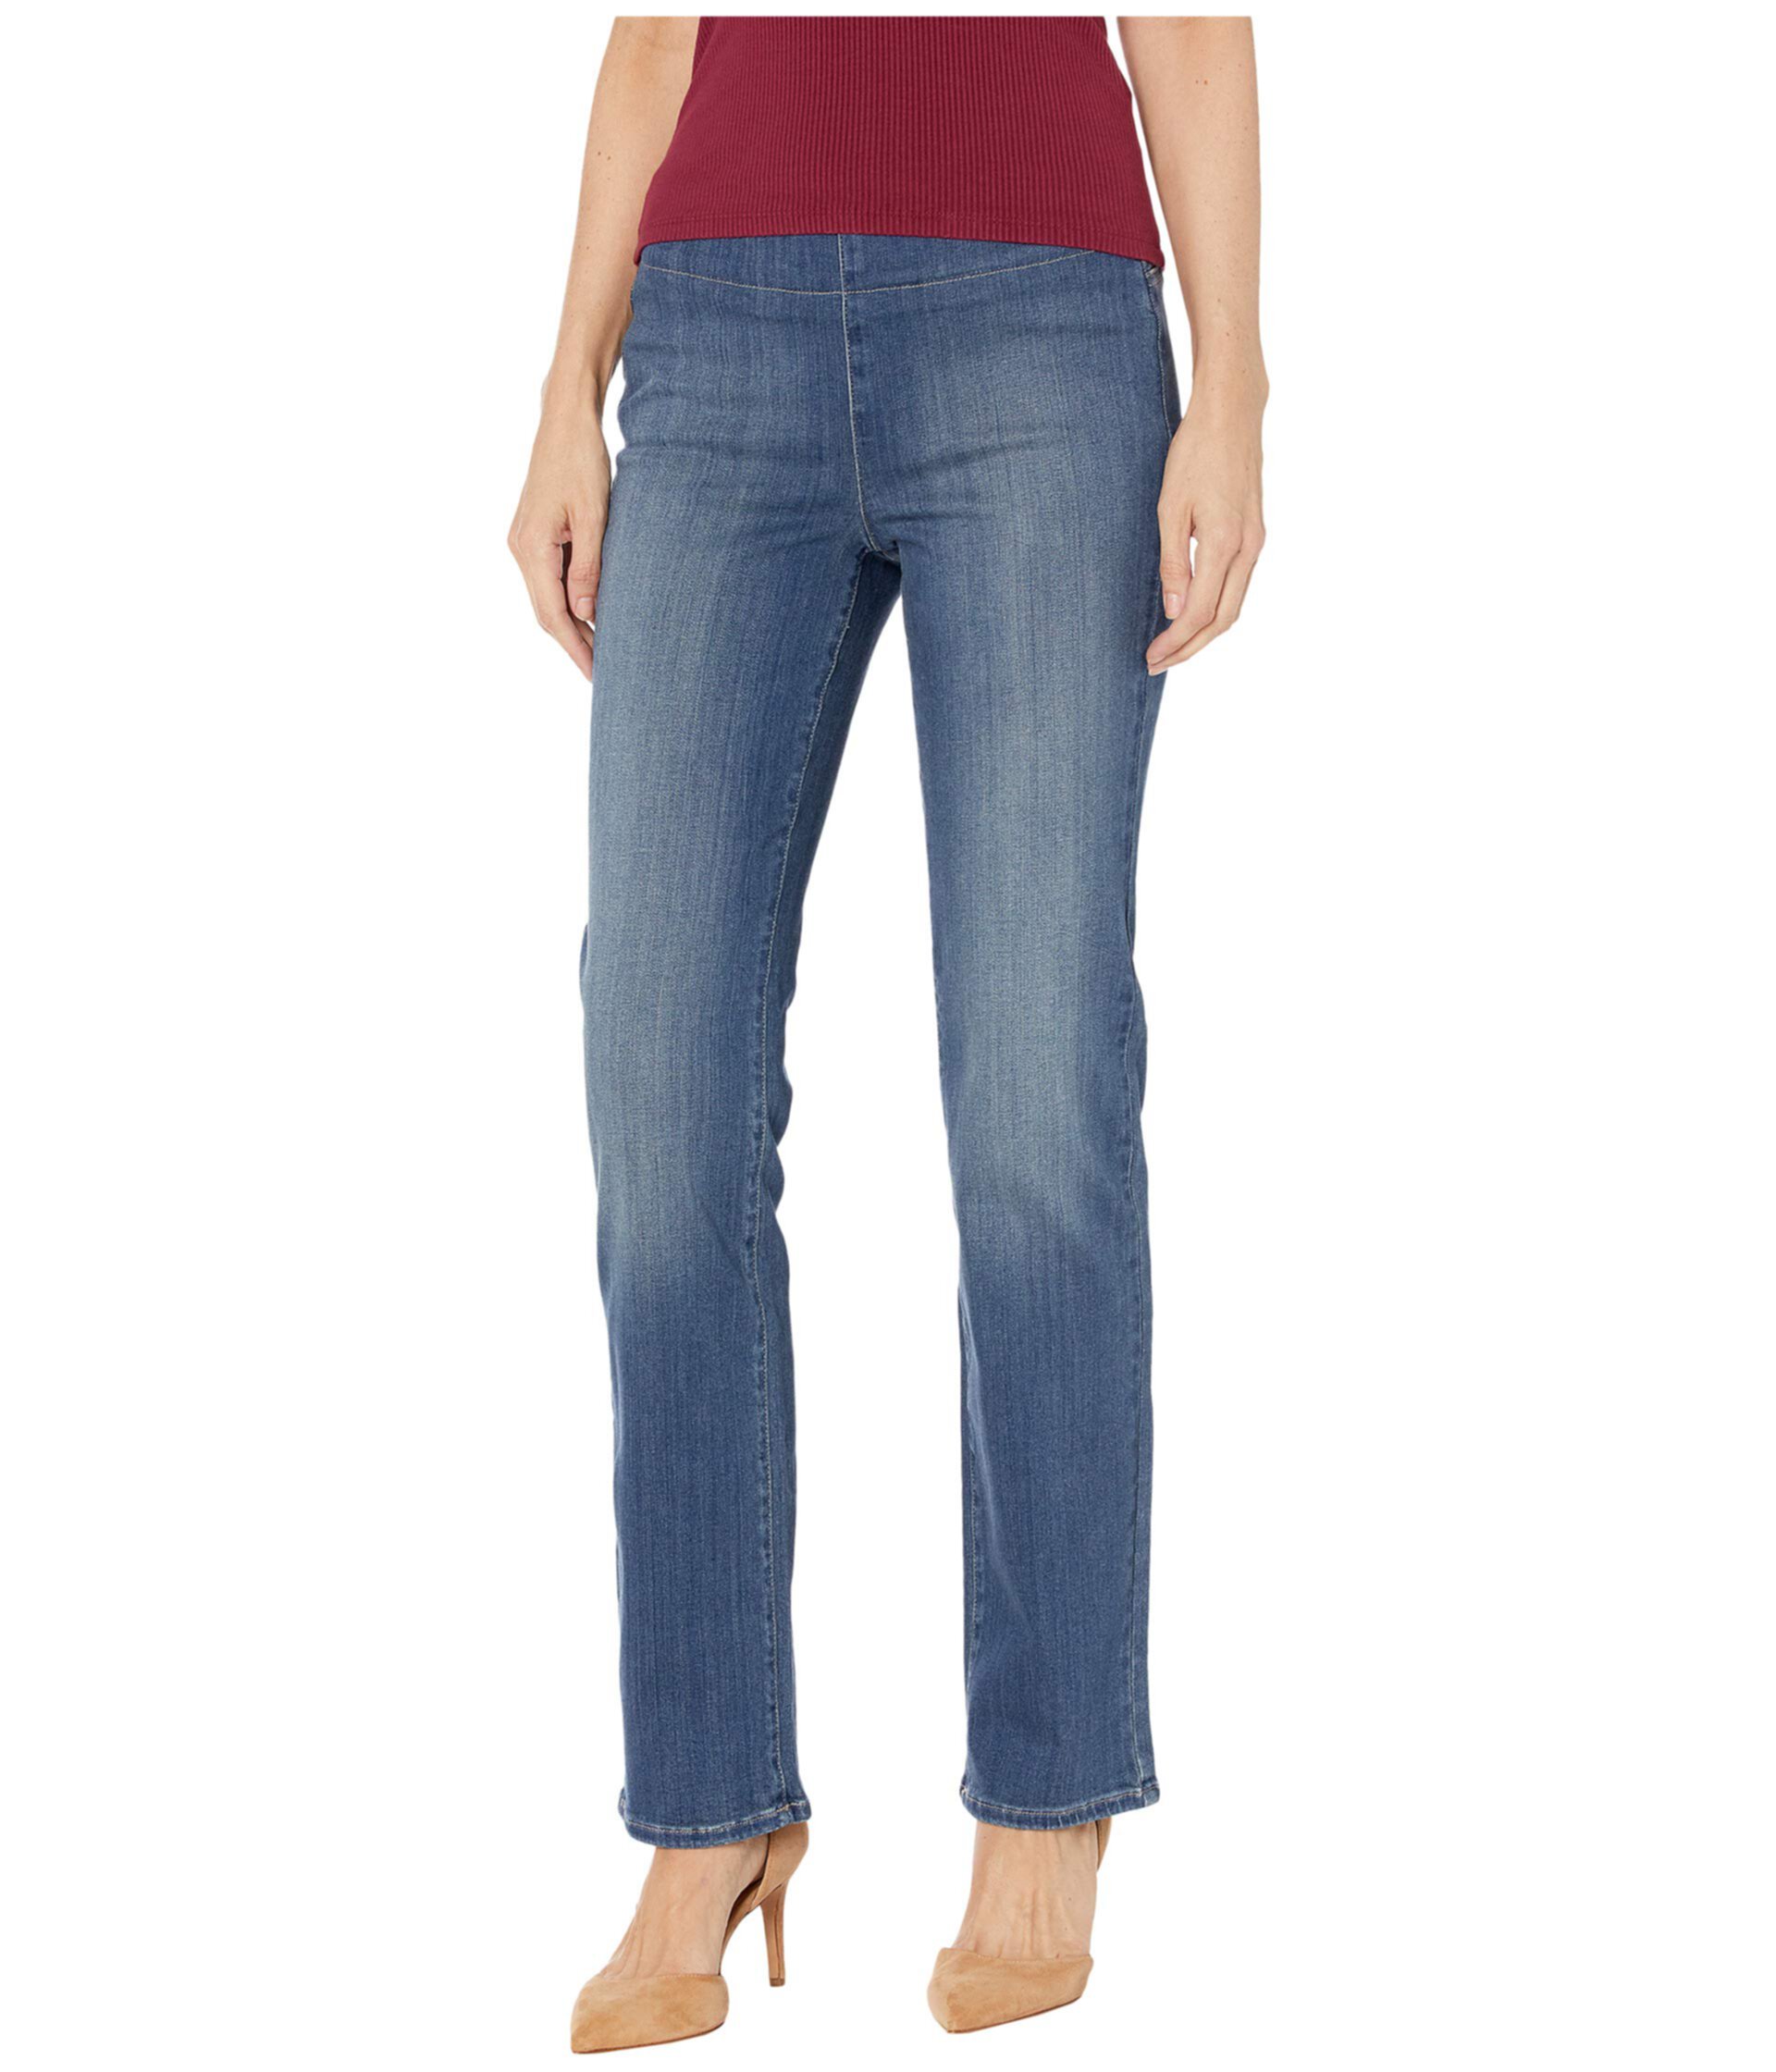 Прямые джинсы Marilyn без застежки в цвете Clean Balance NYDJ